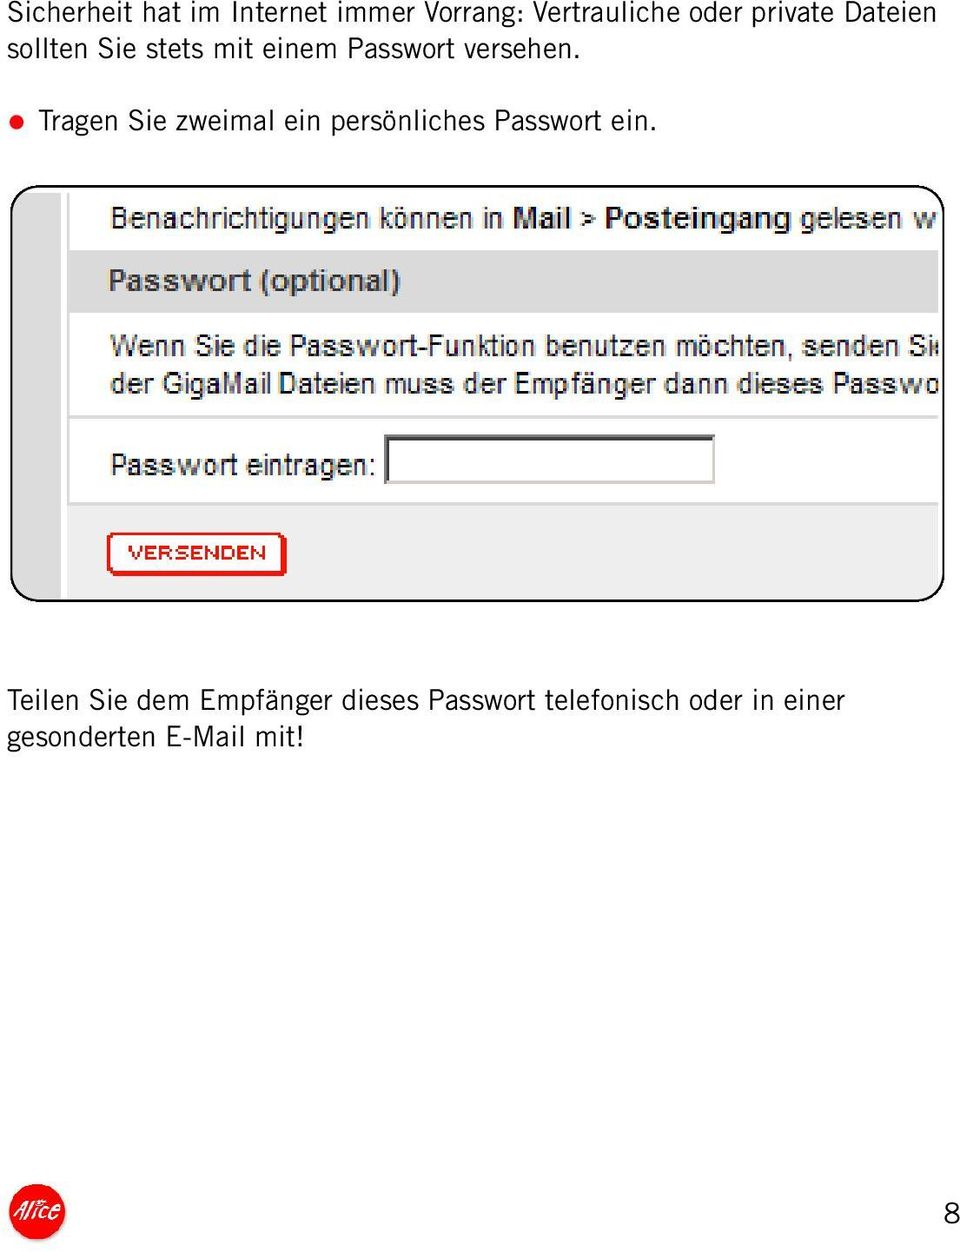 Tragen Sie zweimal ein persönliches Passwort ein.